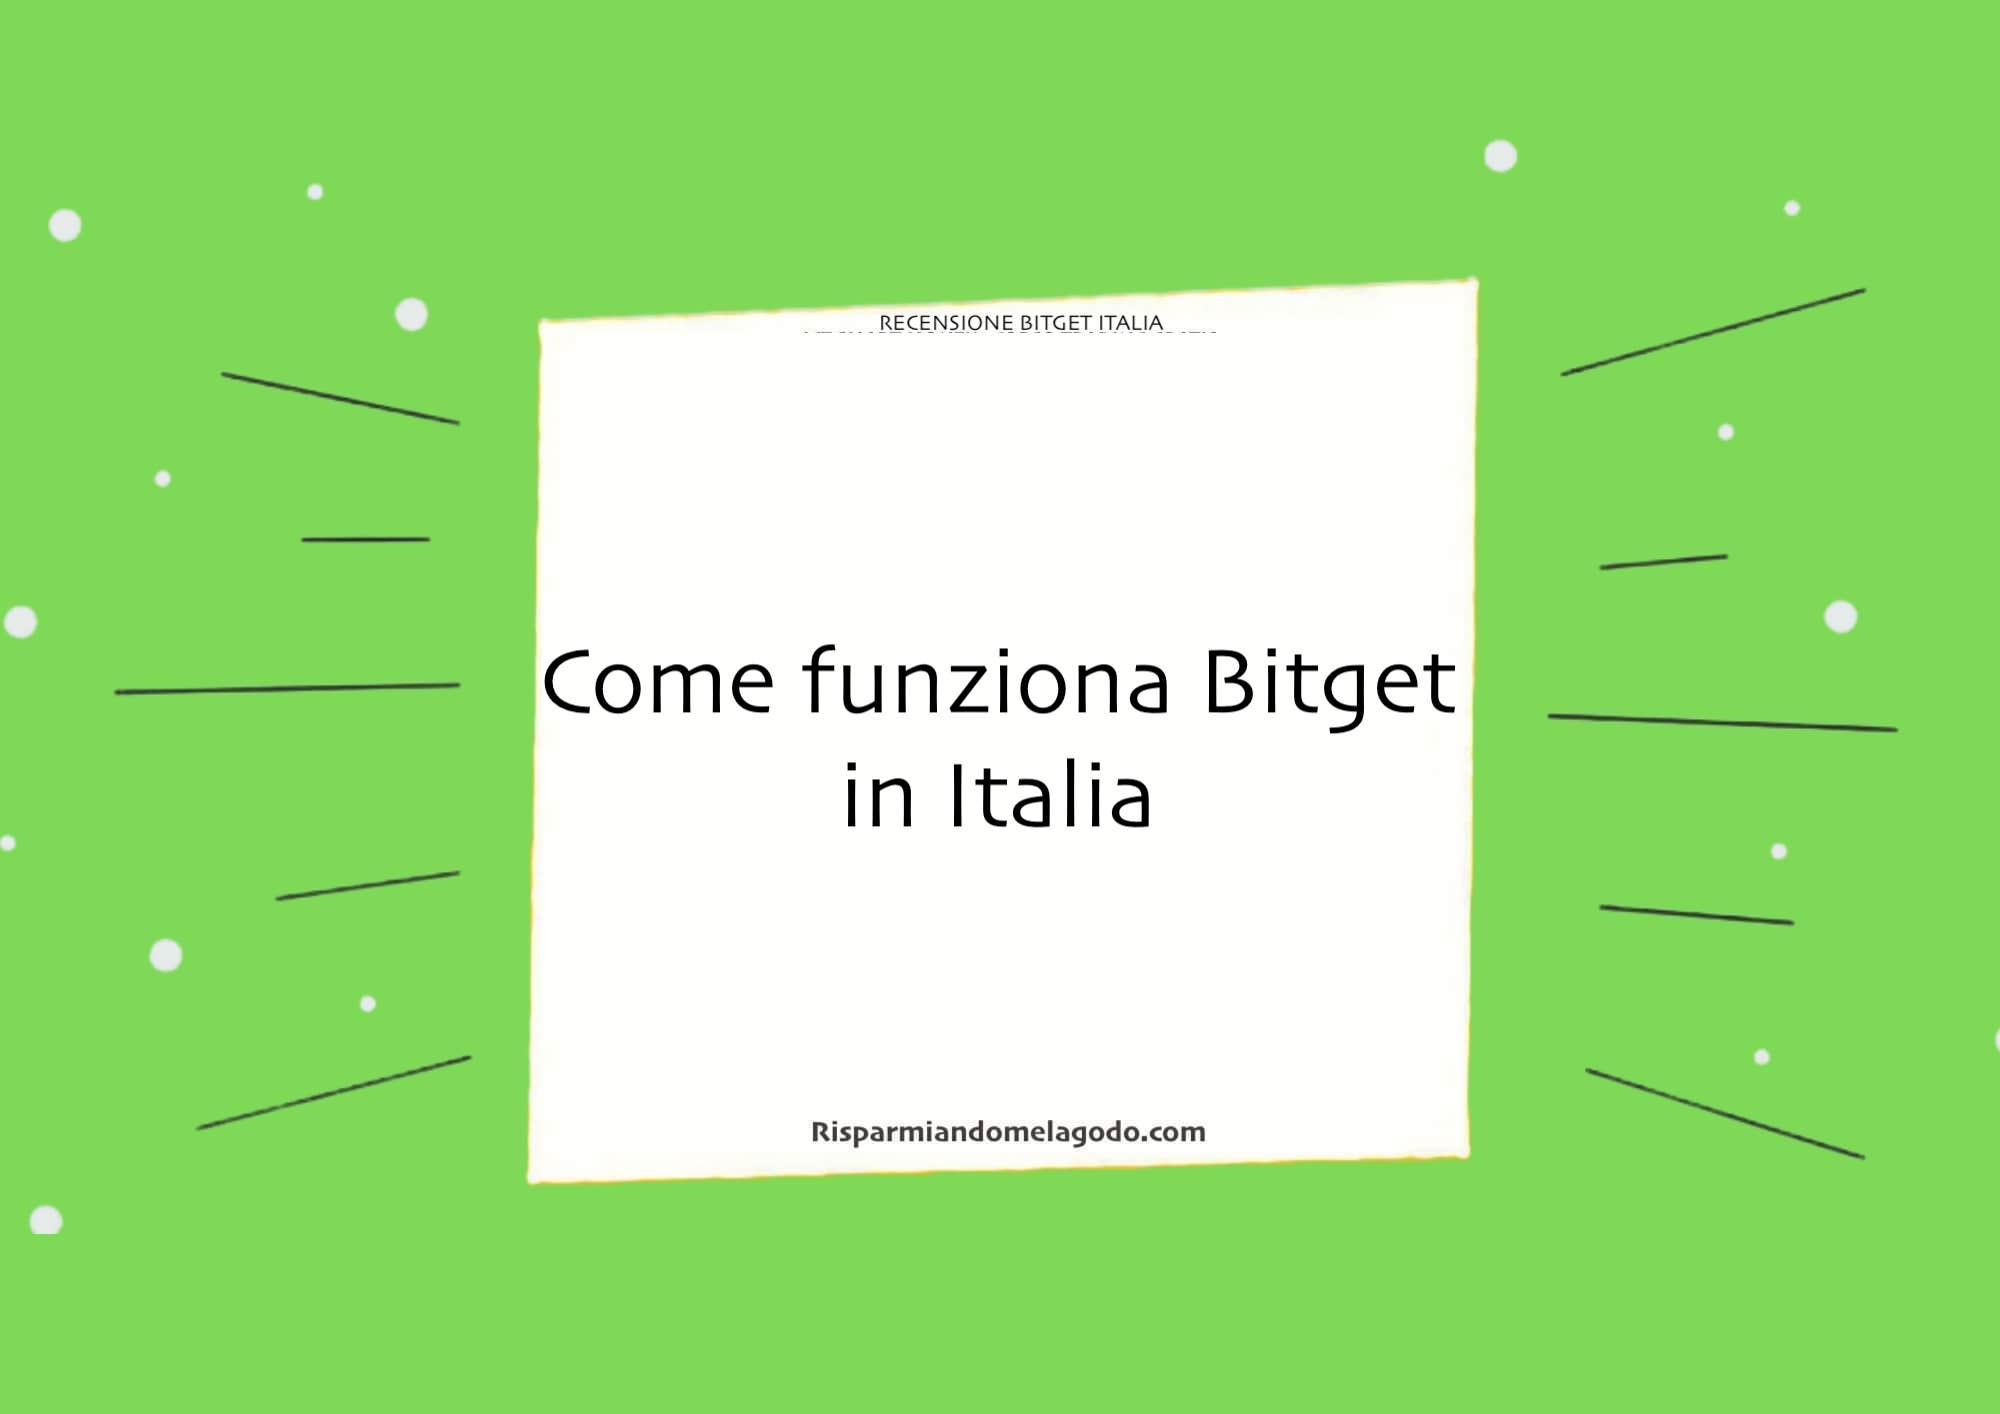 Come funziona Bitget in Italia